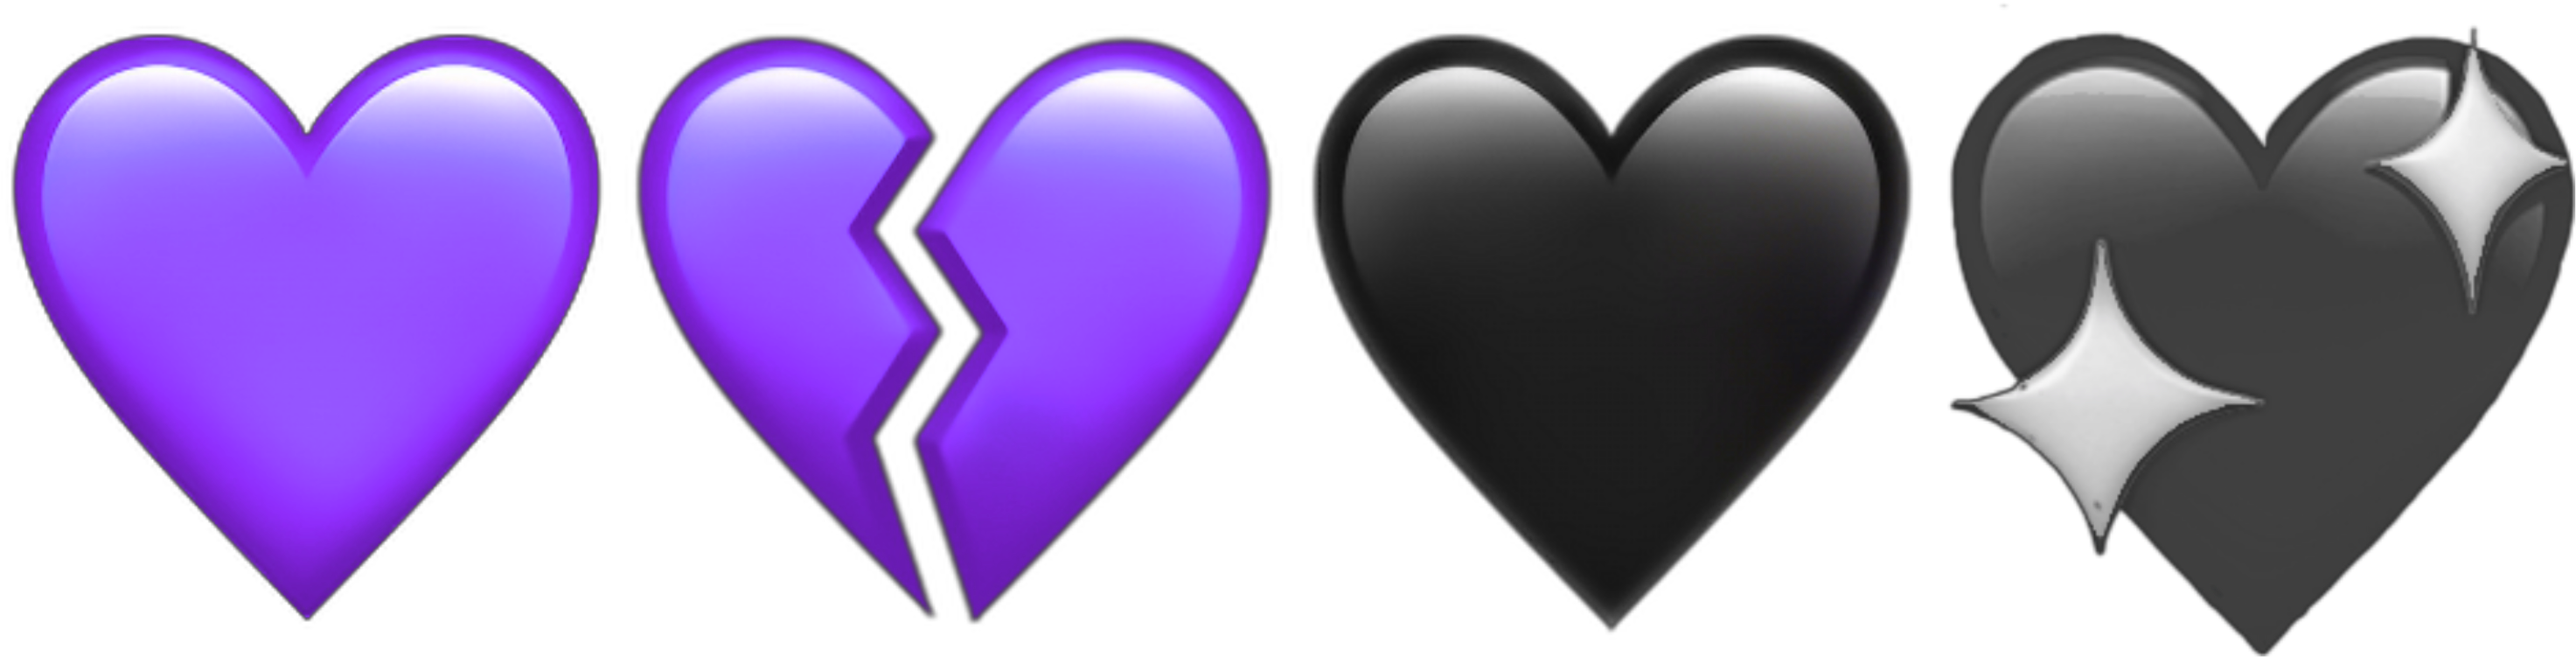 Purple Hearts Heart Broken Heartbroken Aesthetic Aesthetics - Heart Clipart (3464x3464), Png Download